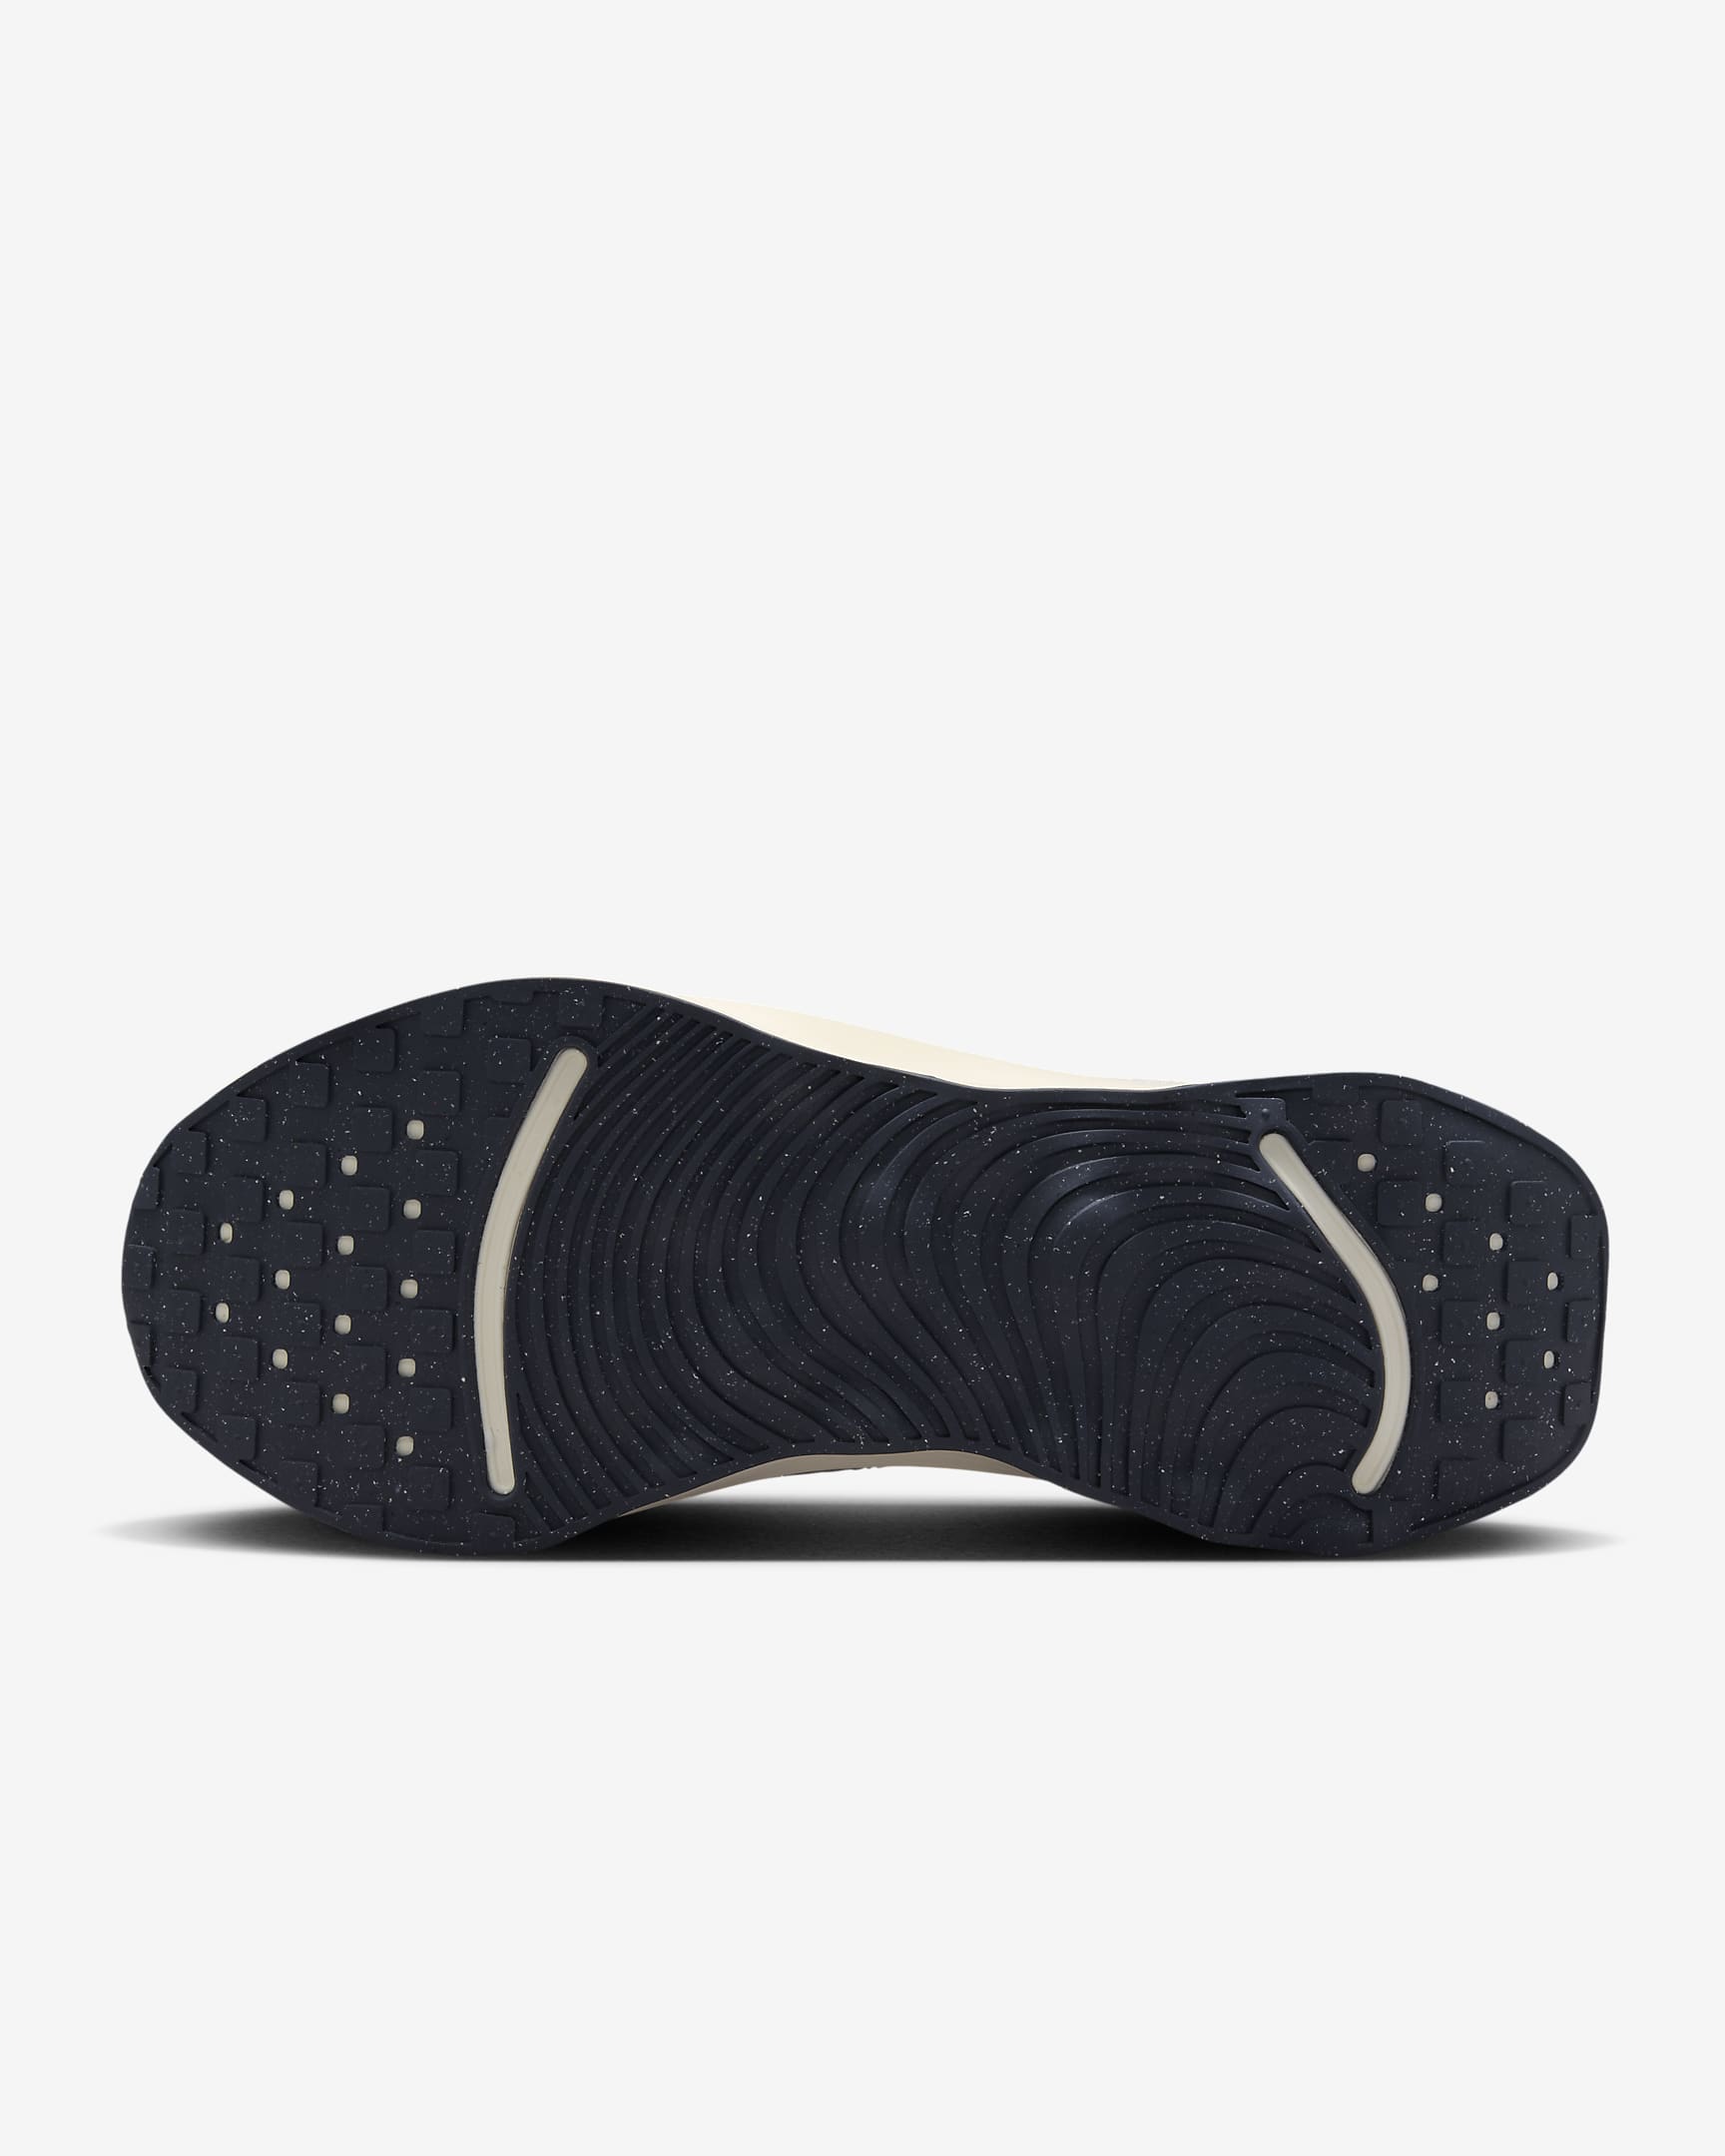 Nike Motiva Men's Walking Shoes - Sail/Platinum Tint/Light Iron Ore/Sail